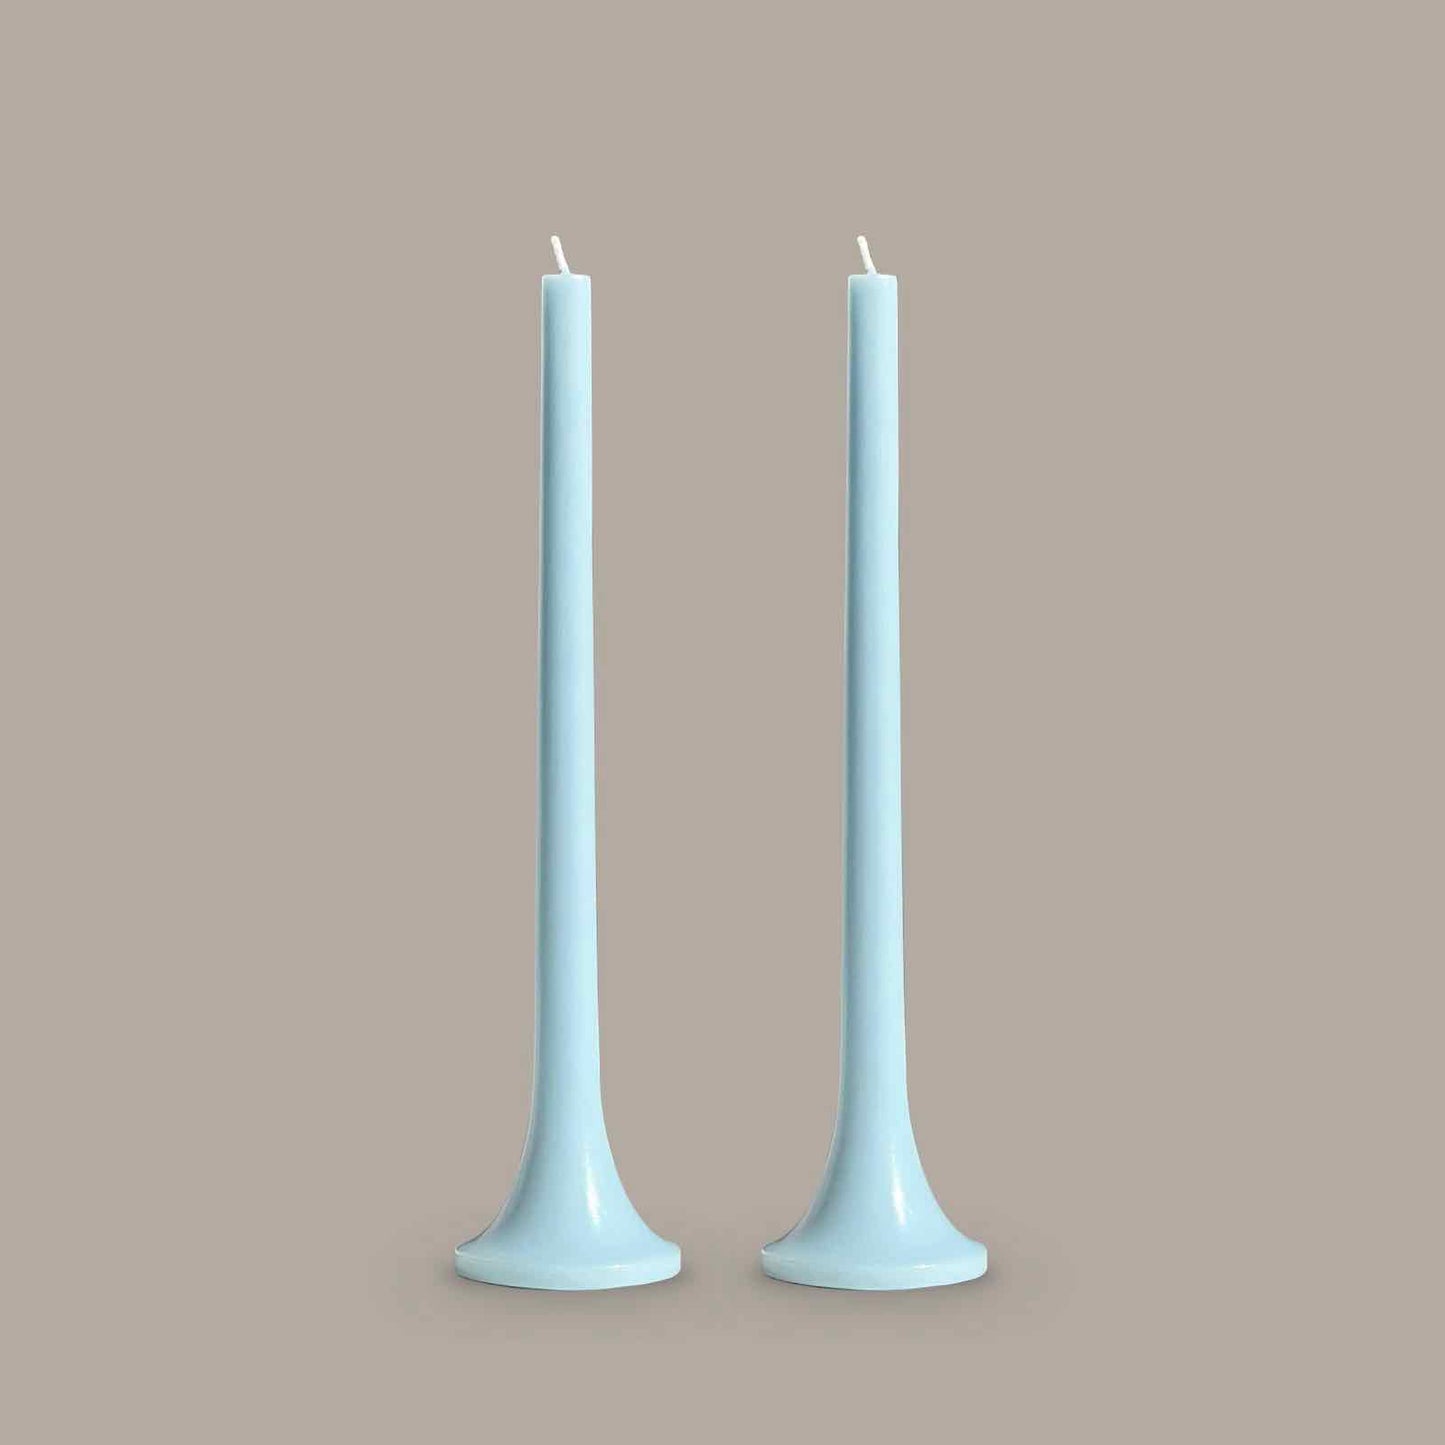 Blue wedding candle